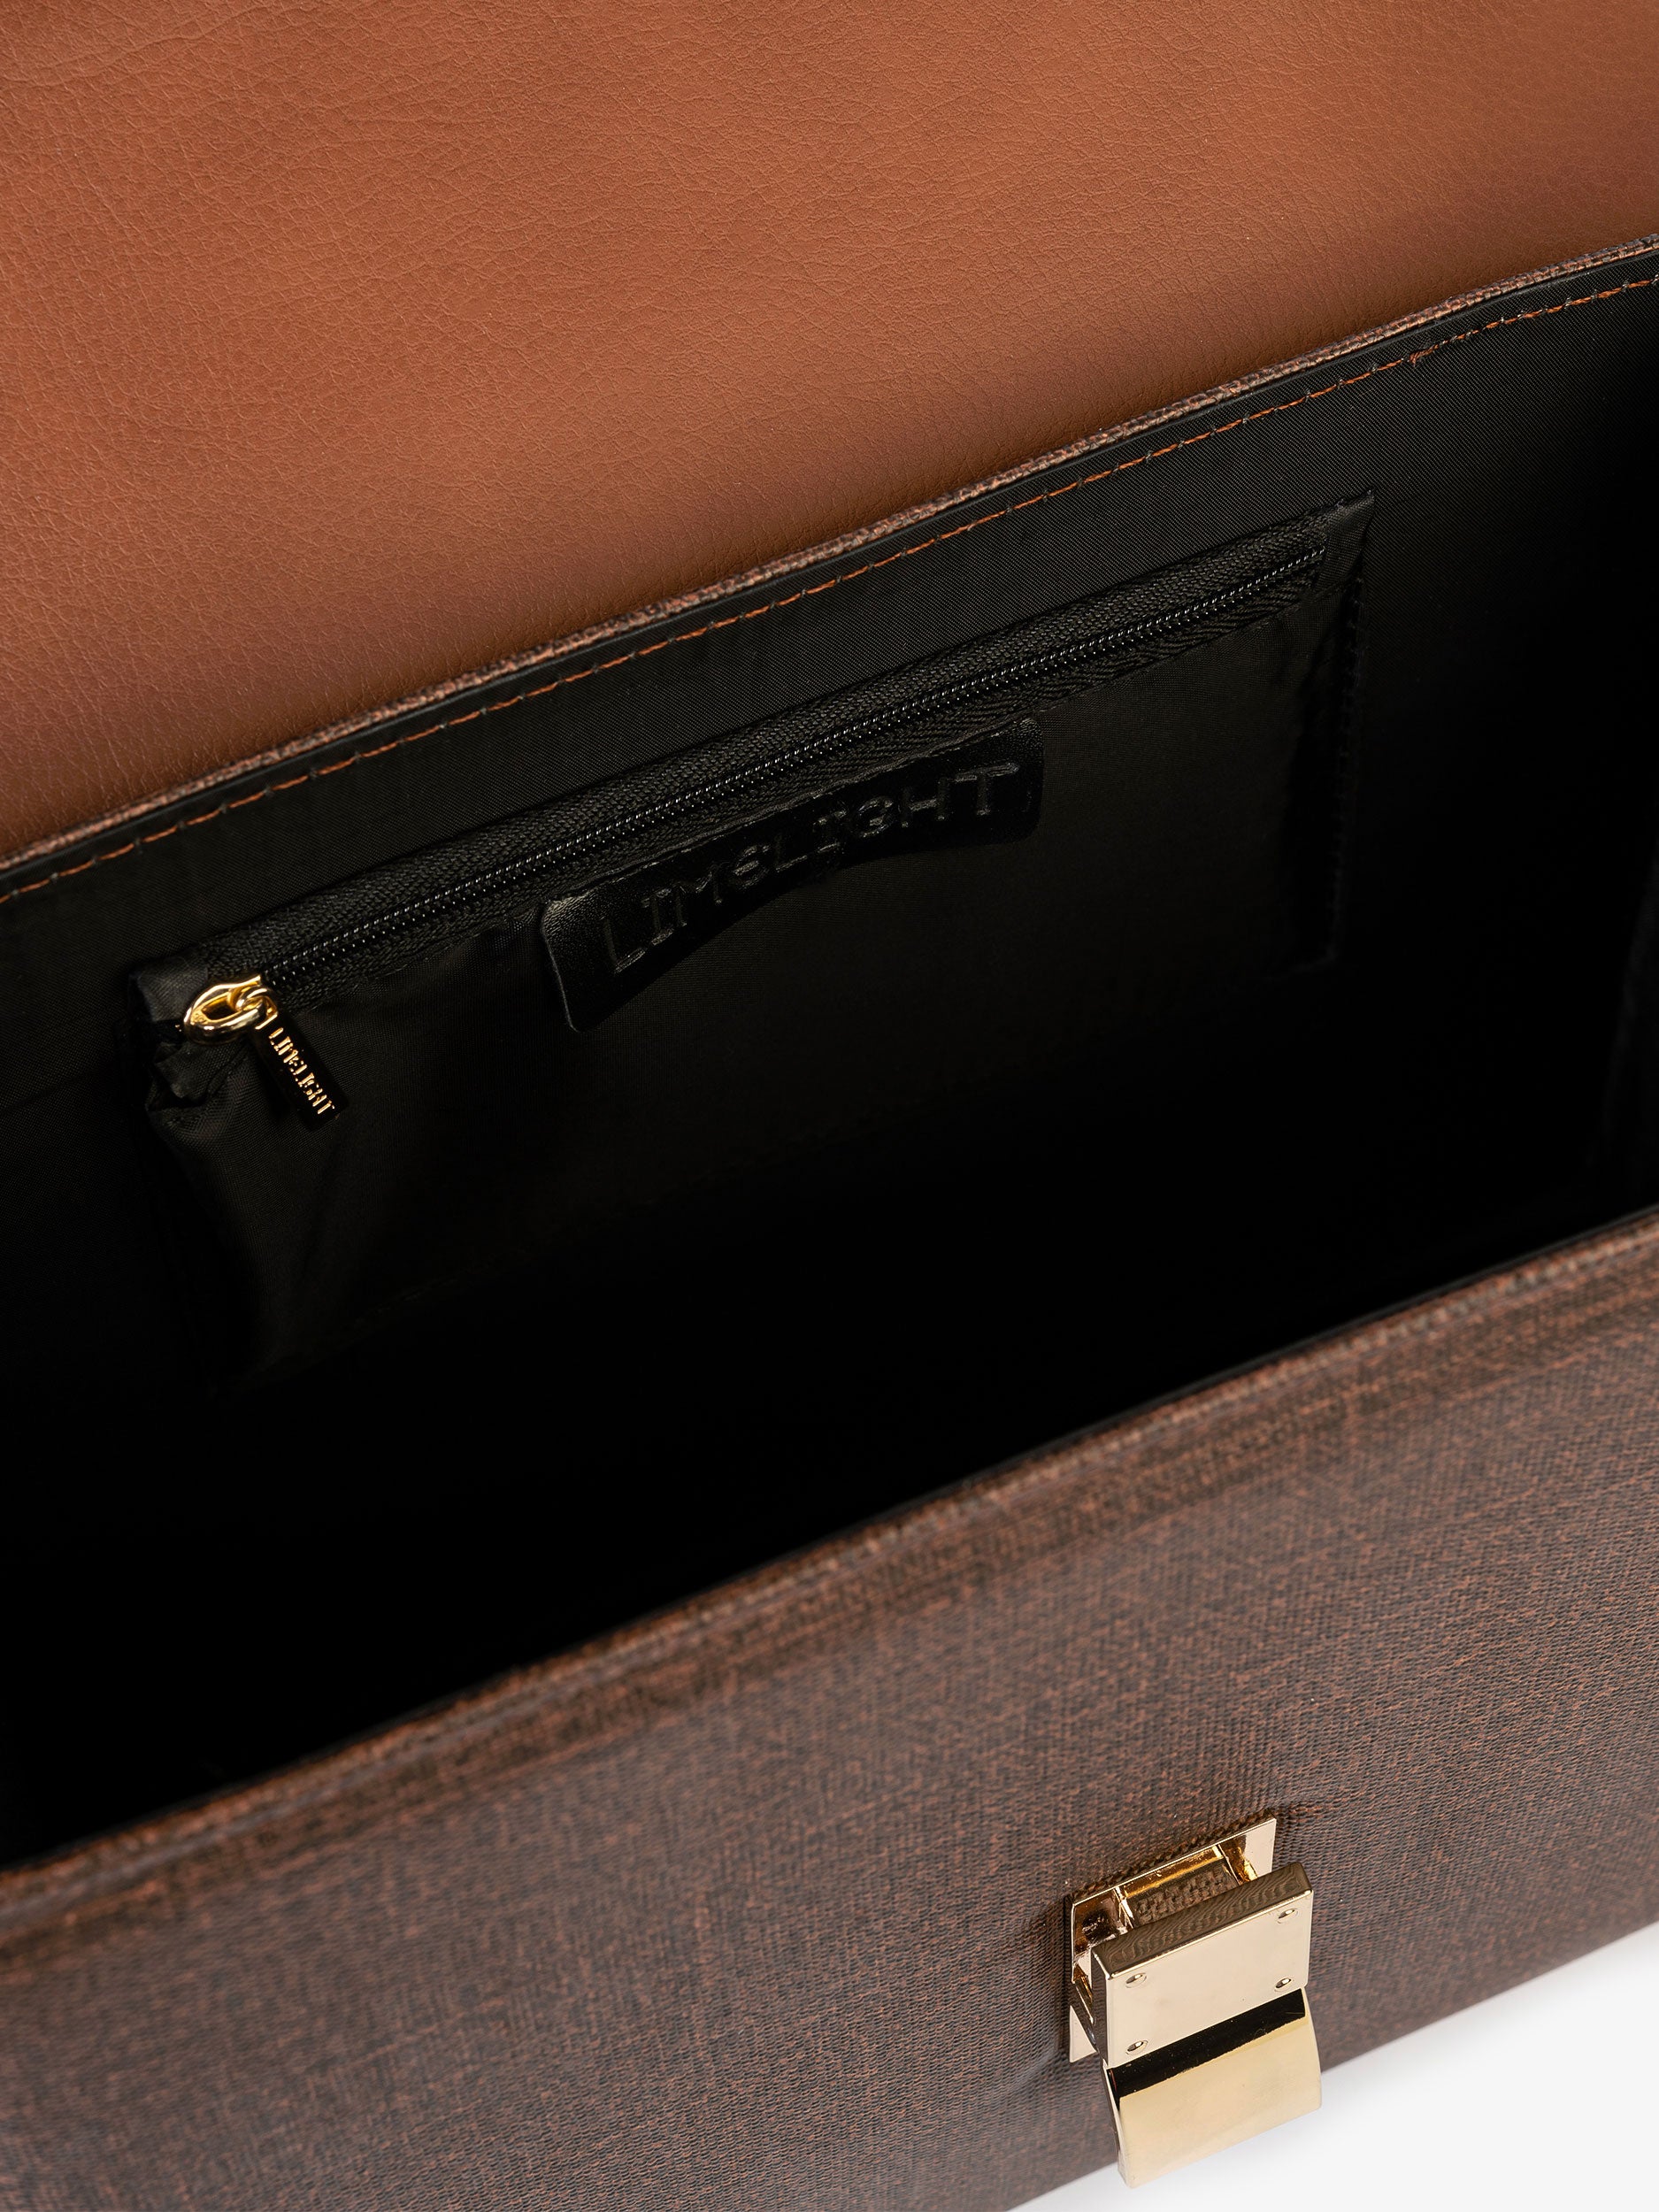 Classic Handbag – Limelightpk